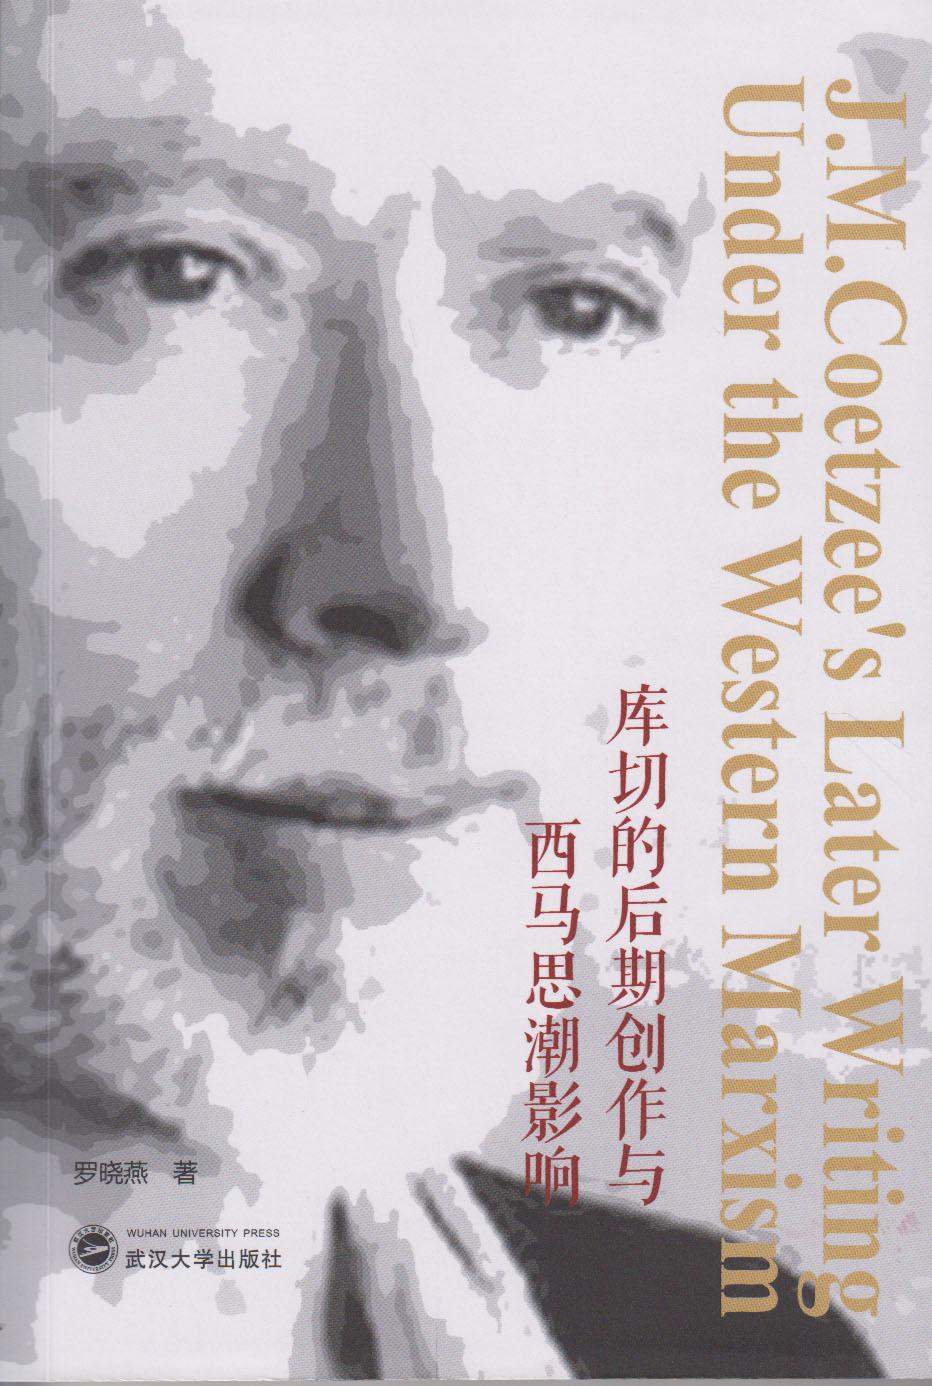 库切的后期创作与西马思潮影响（英文） 罗晓燕  武汉大学出版社